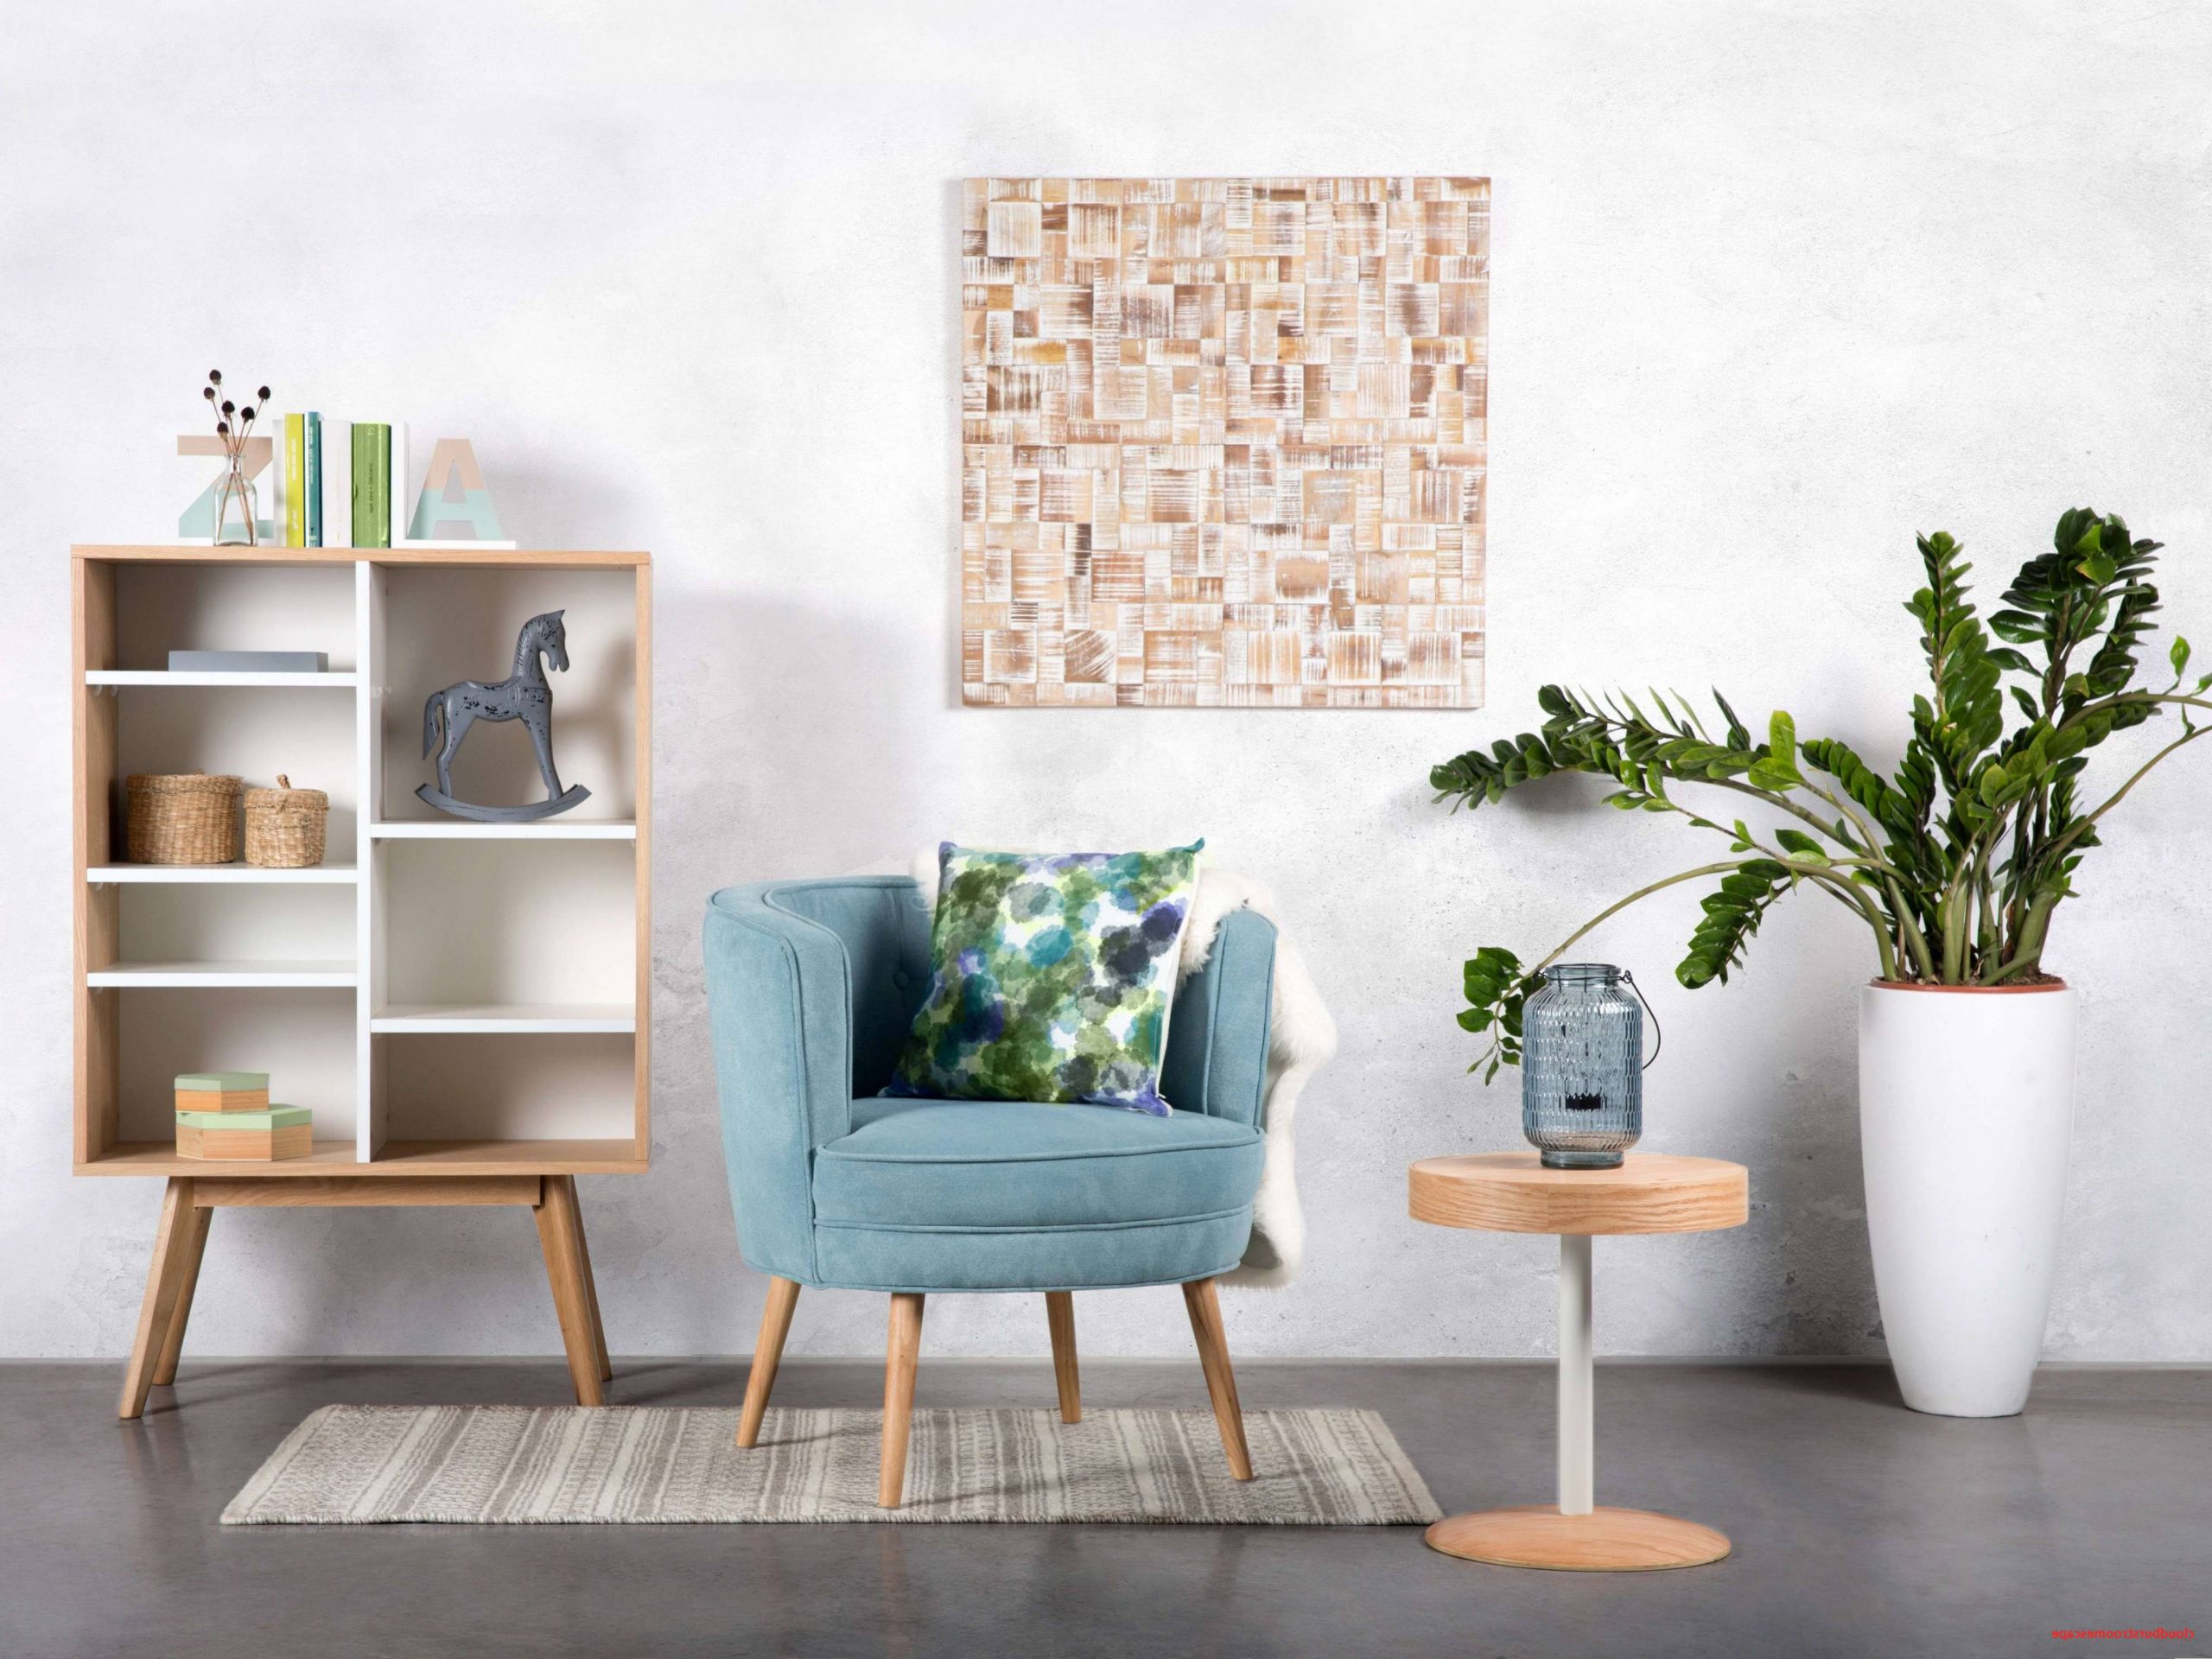 dekoration wohnzimmer herbst inspirierend 35 moderne ideen fur tv mobel of dekoration wohnzimmer herbst